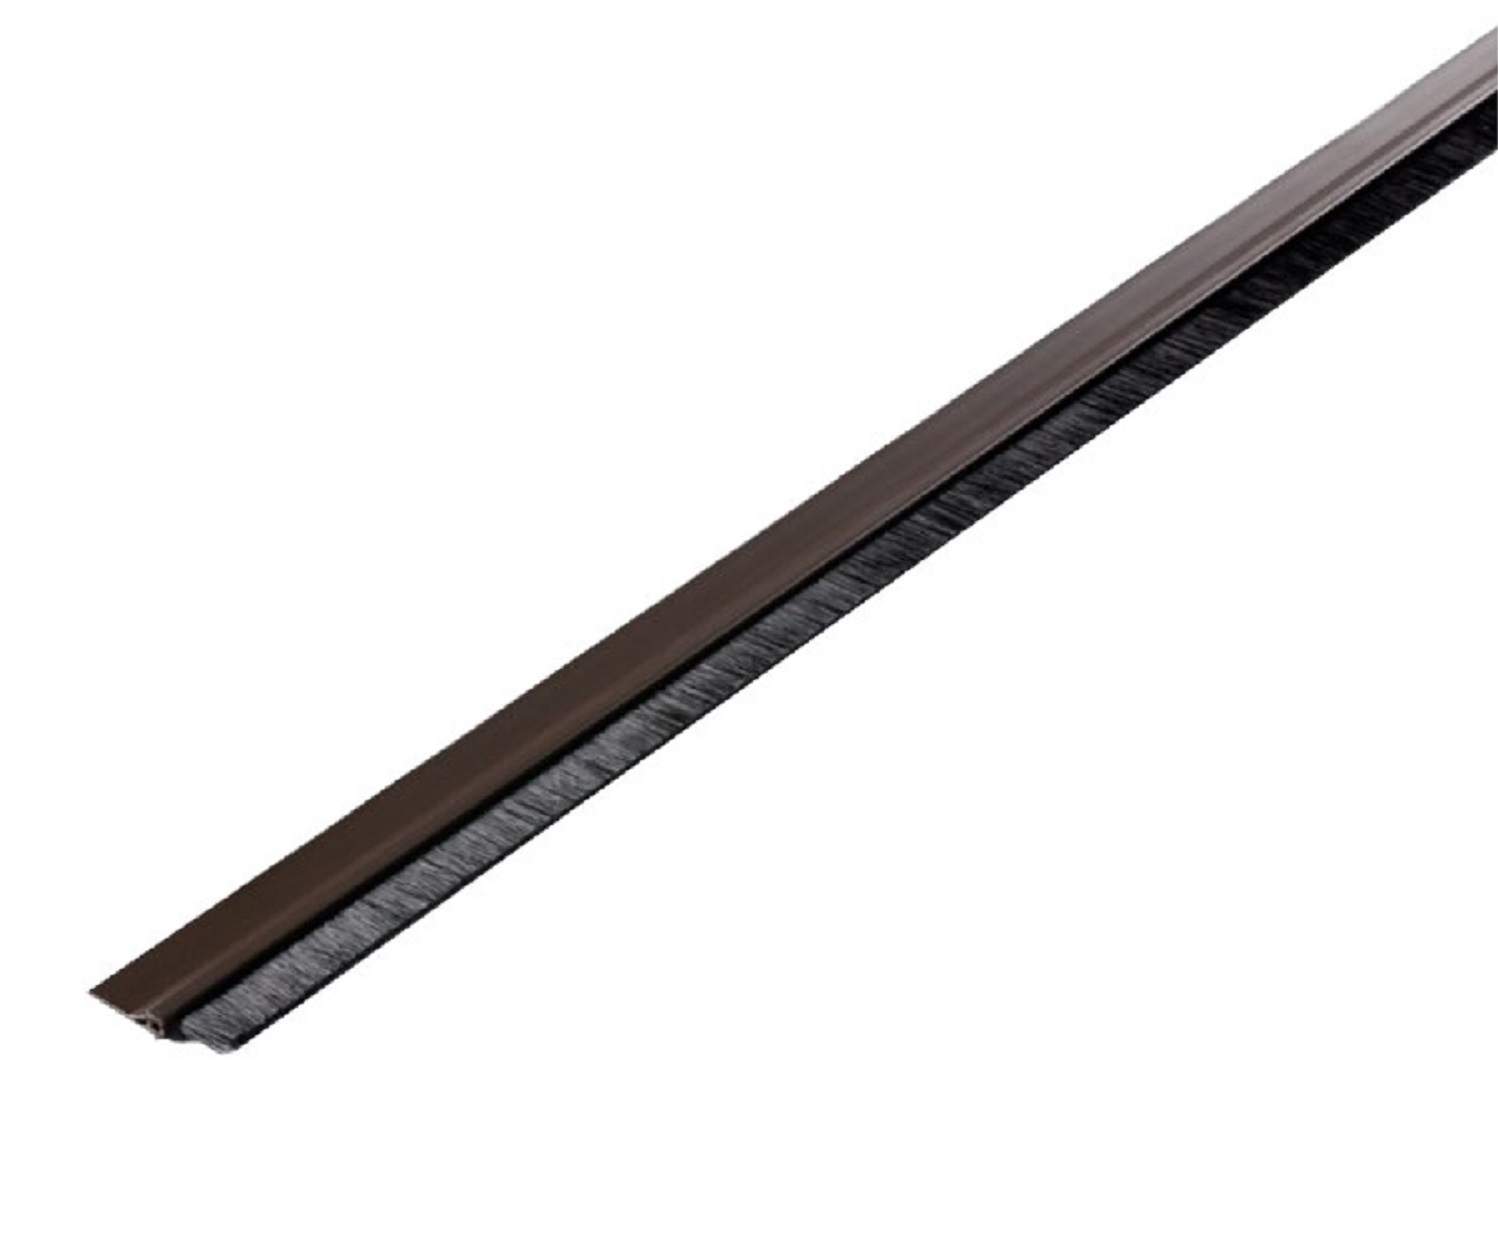 Bas de porte adhésif marron en PVC rigide avec brosse souple, 100 cm